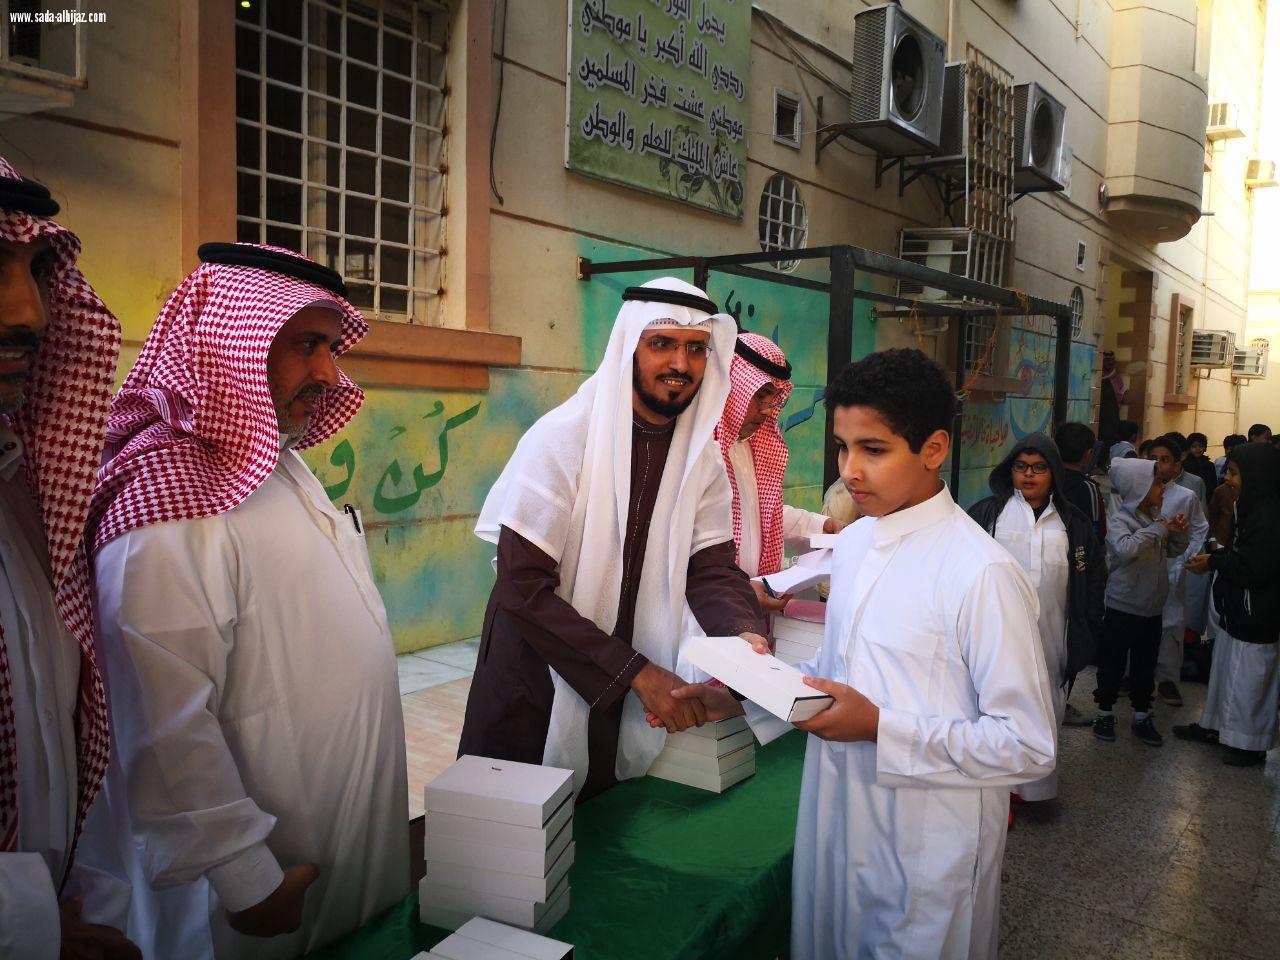 تكريم الطلاب المتفوقين بمدرسة خالد بن سعيد الابتدائية